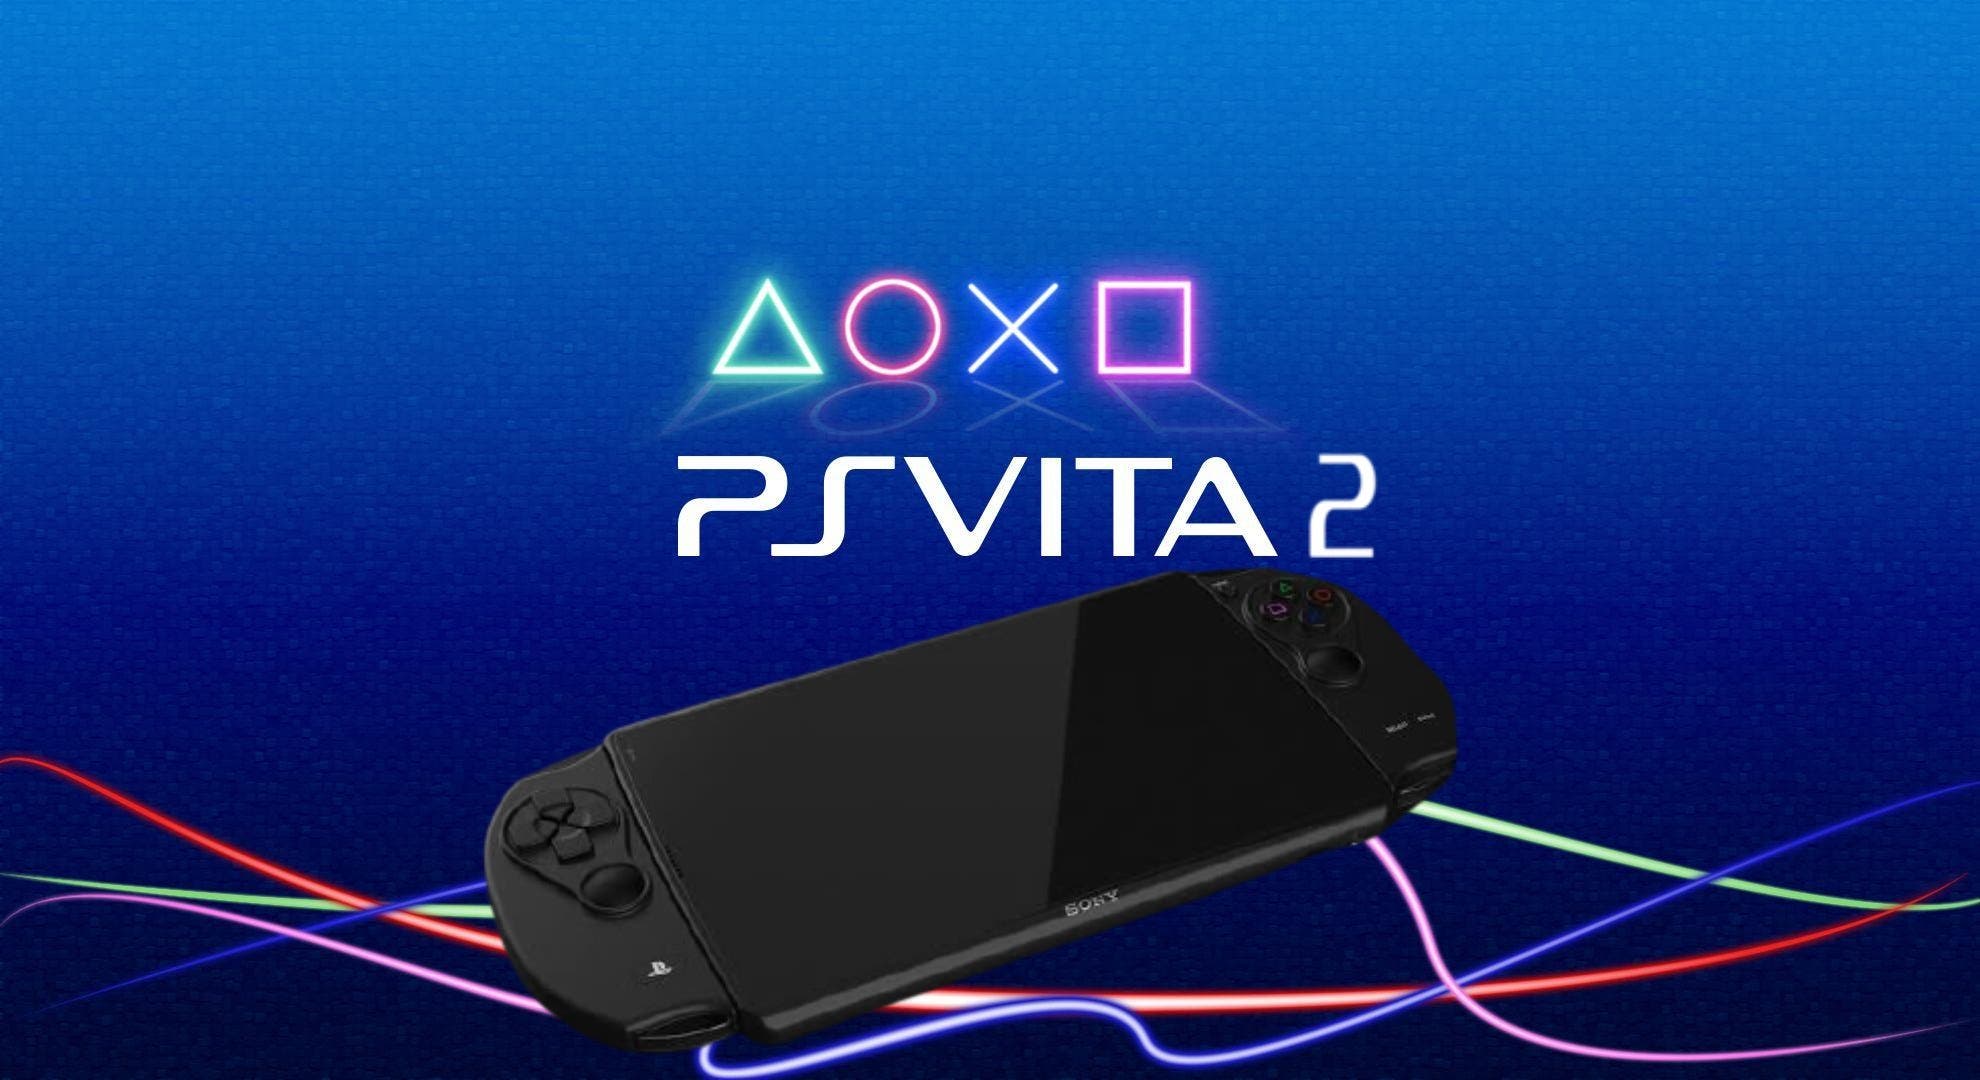 Esta imagen muestra cómo sería una PS Vita 2 actual y el resultado es